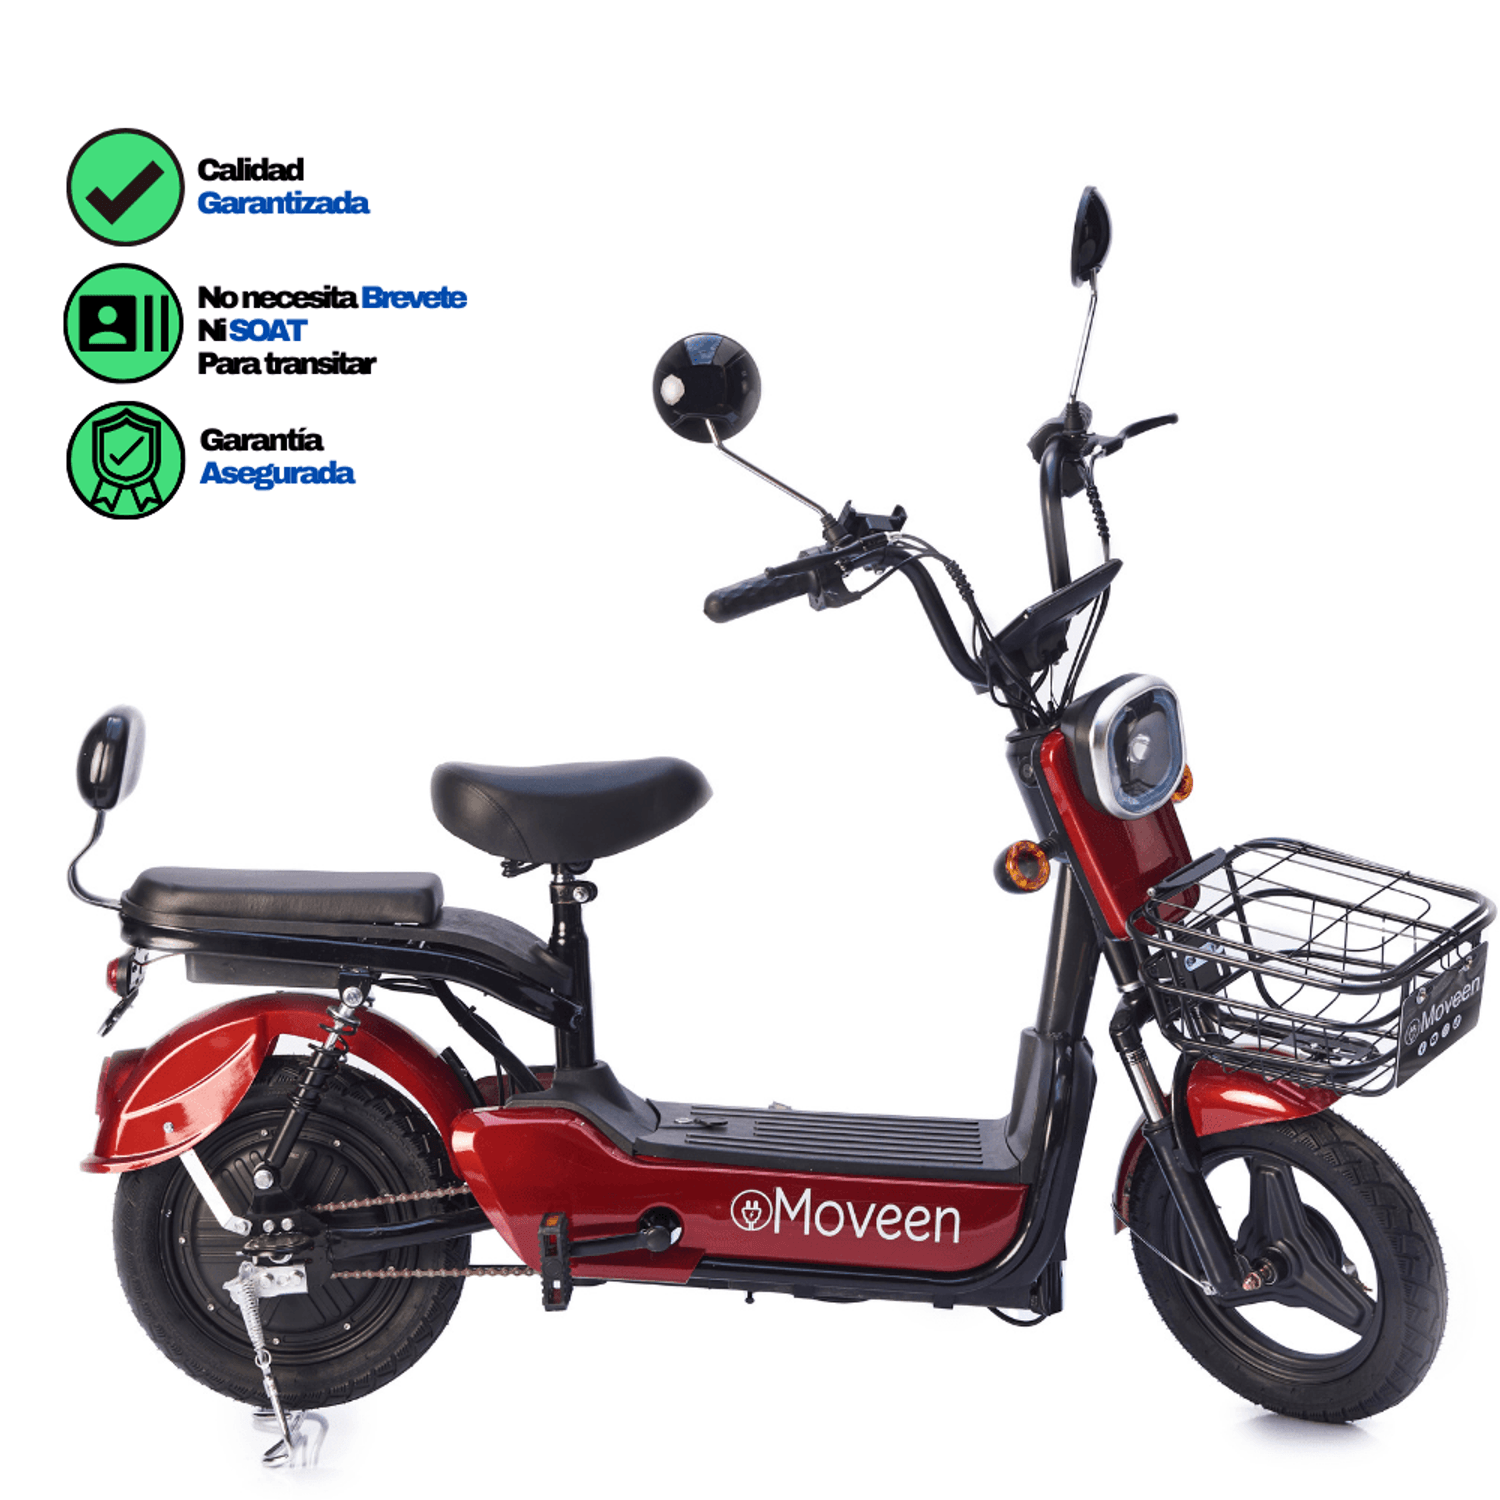 Candado Alarma Antirrobo para Motos Bicicletas Scooter - Promart